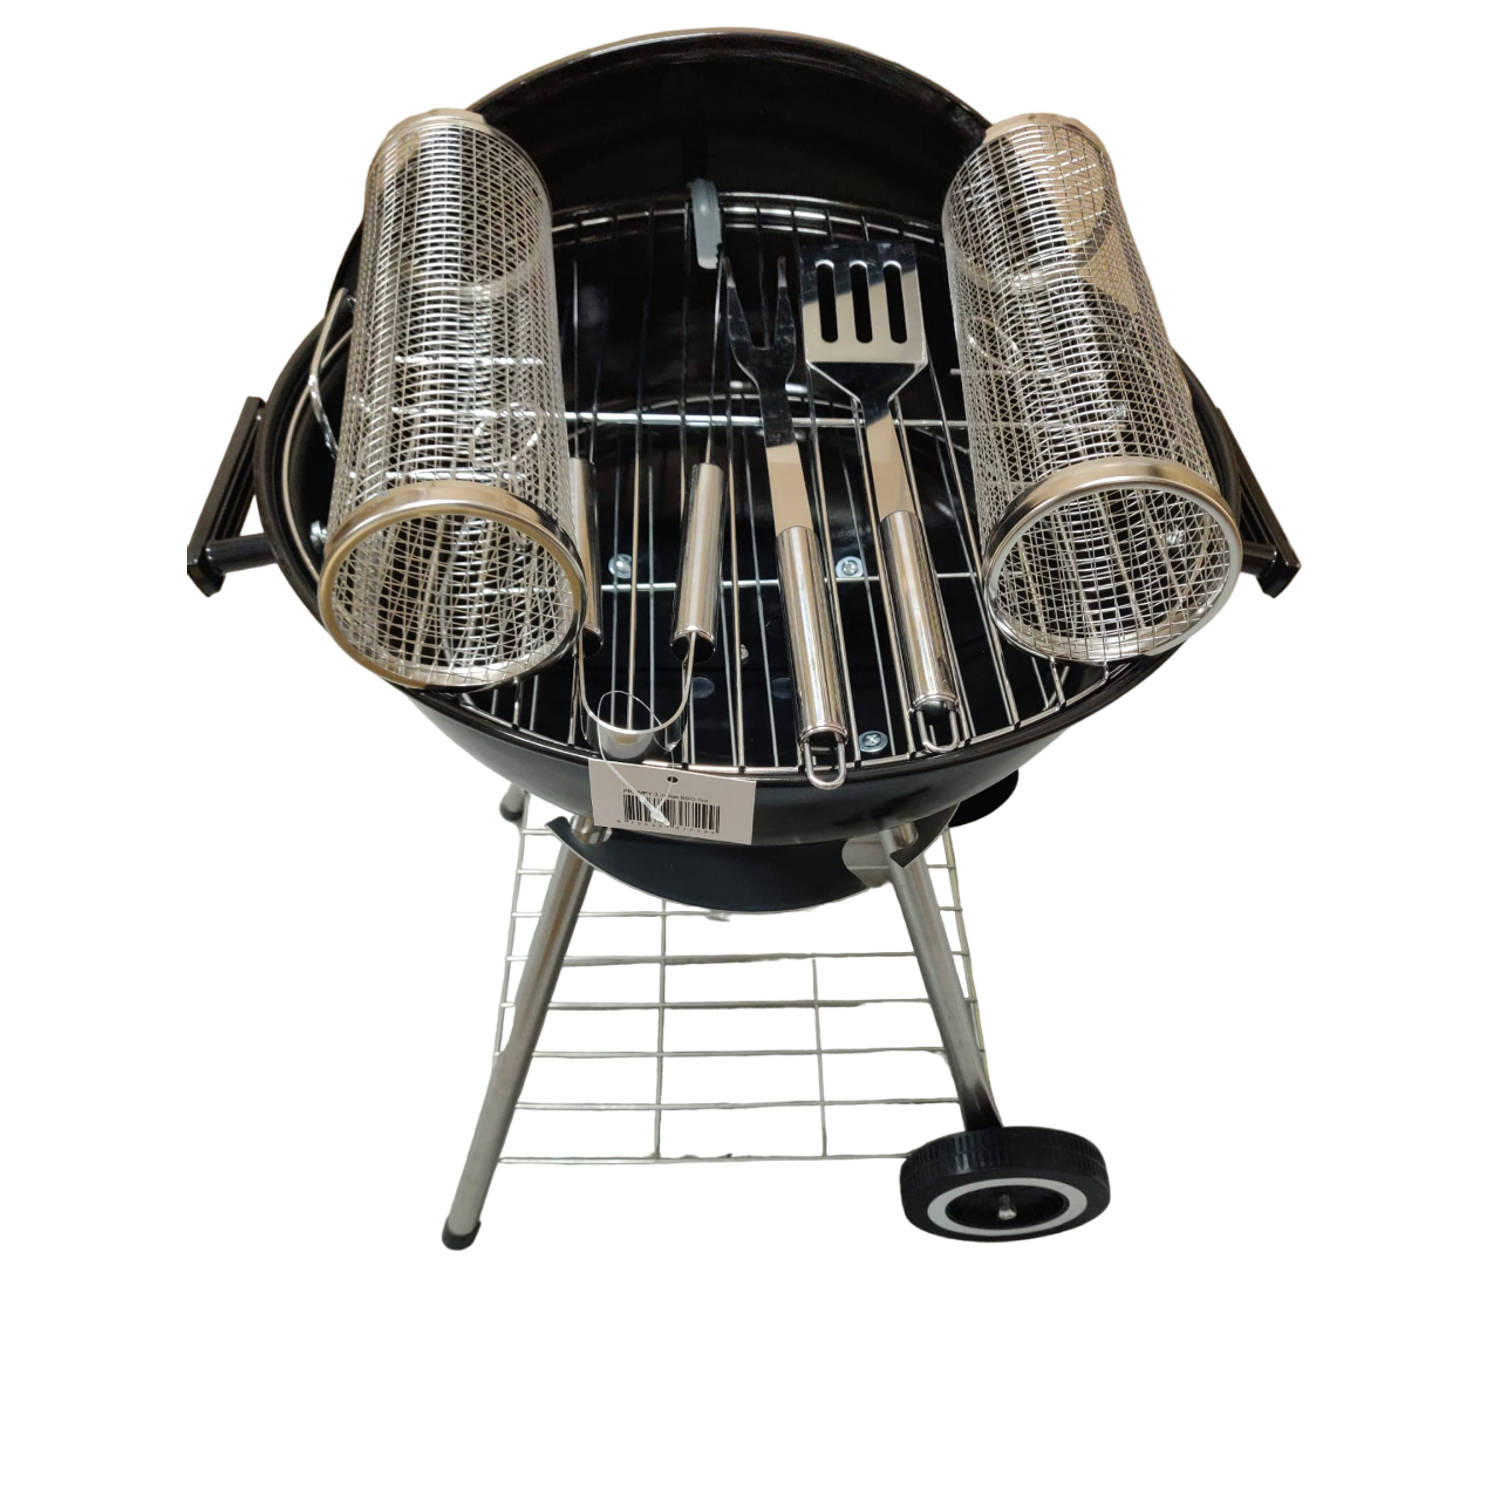 Premfy Luxe Houtskoolbarbecue - Kogelbarbecue 46x76cm - Grilloppervlak 45cm - SET met BBQ Hoes, Grillrollen en Tangenset